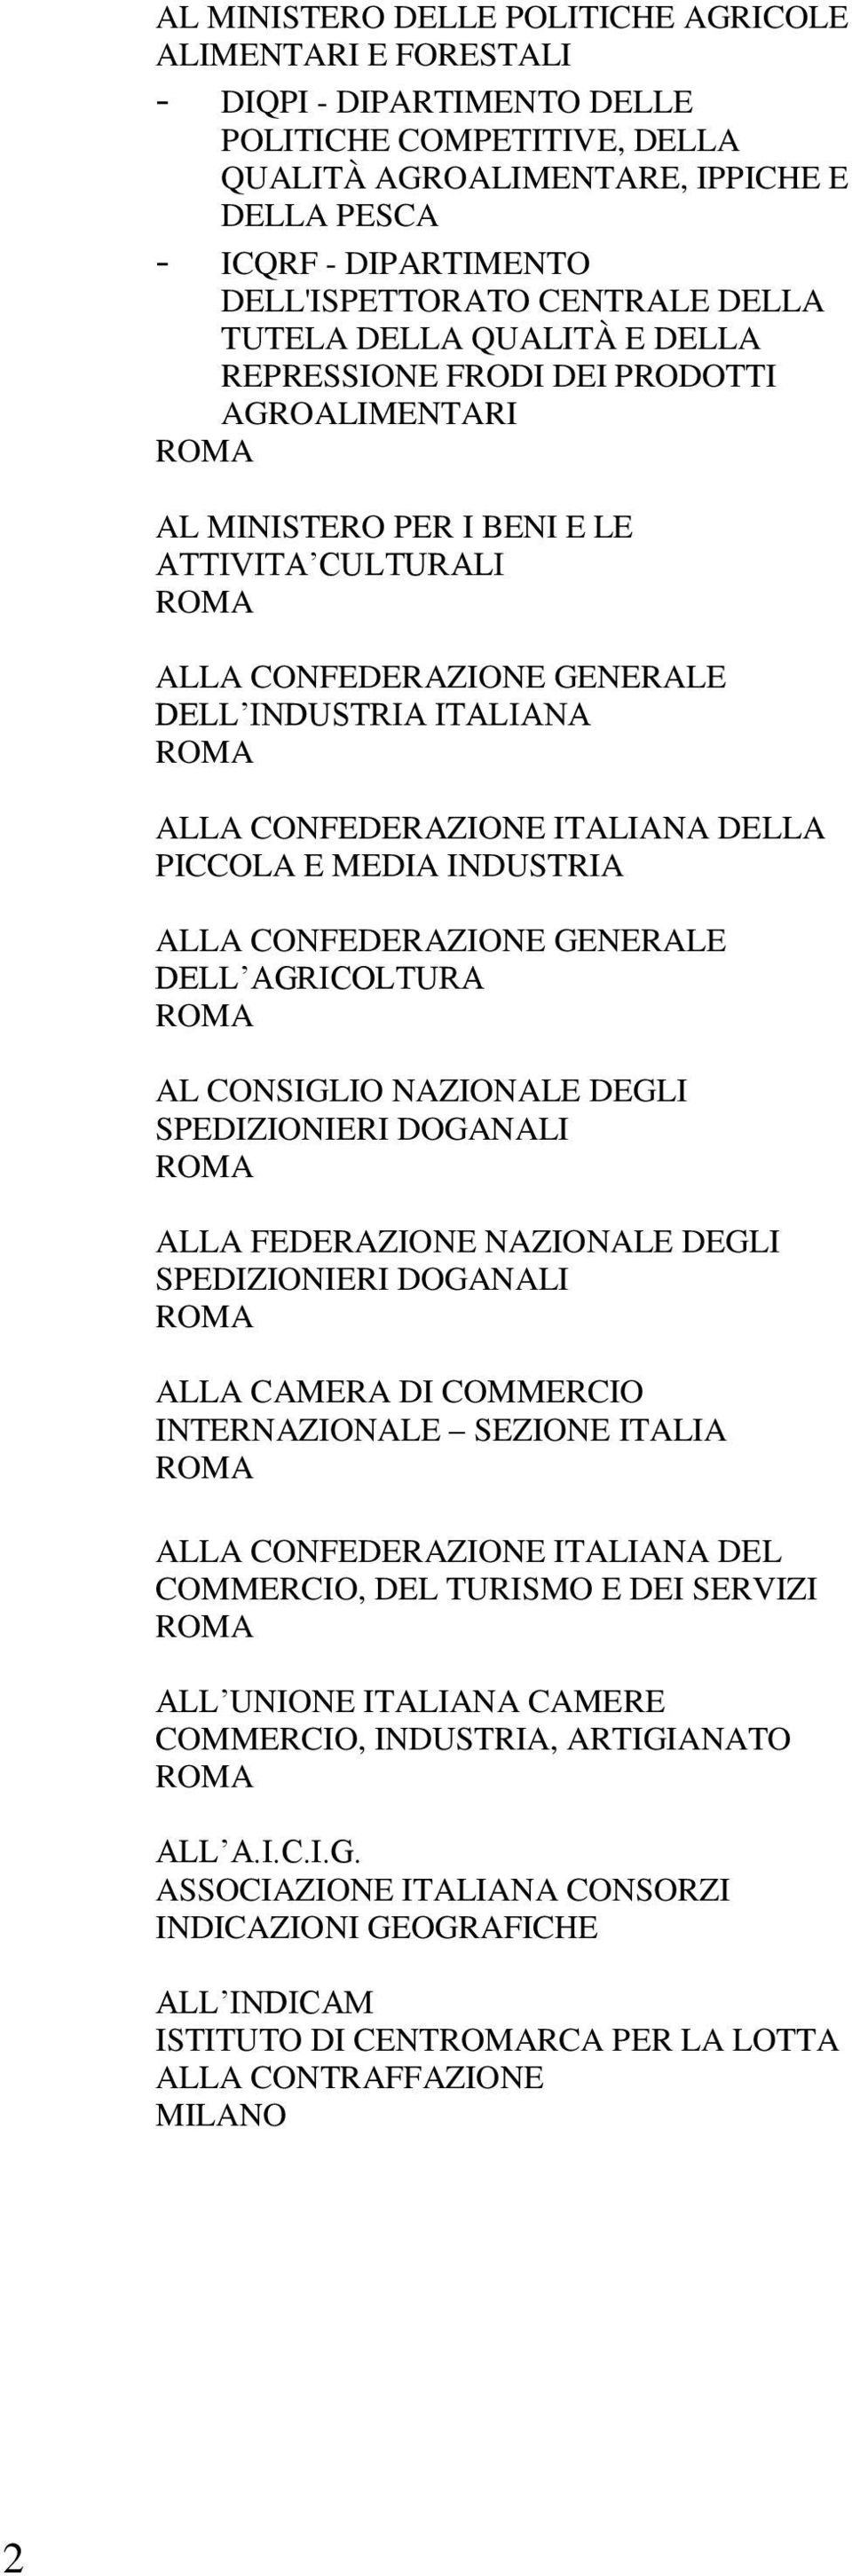 ITALIANA ALLA CONFEDERAZIONE ITALIANA DELLA PICCOLA E MEDIA INDUSTRIA ALLA CONFEDERAZIONE GENERALE DELL AGRICOLTURA AL CONSIGLIO NAZIONALE DEGLI SPEDIZIONIERI DOGANALI ALLA FEDERAZIONE NAZIONALE